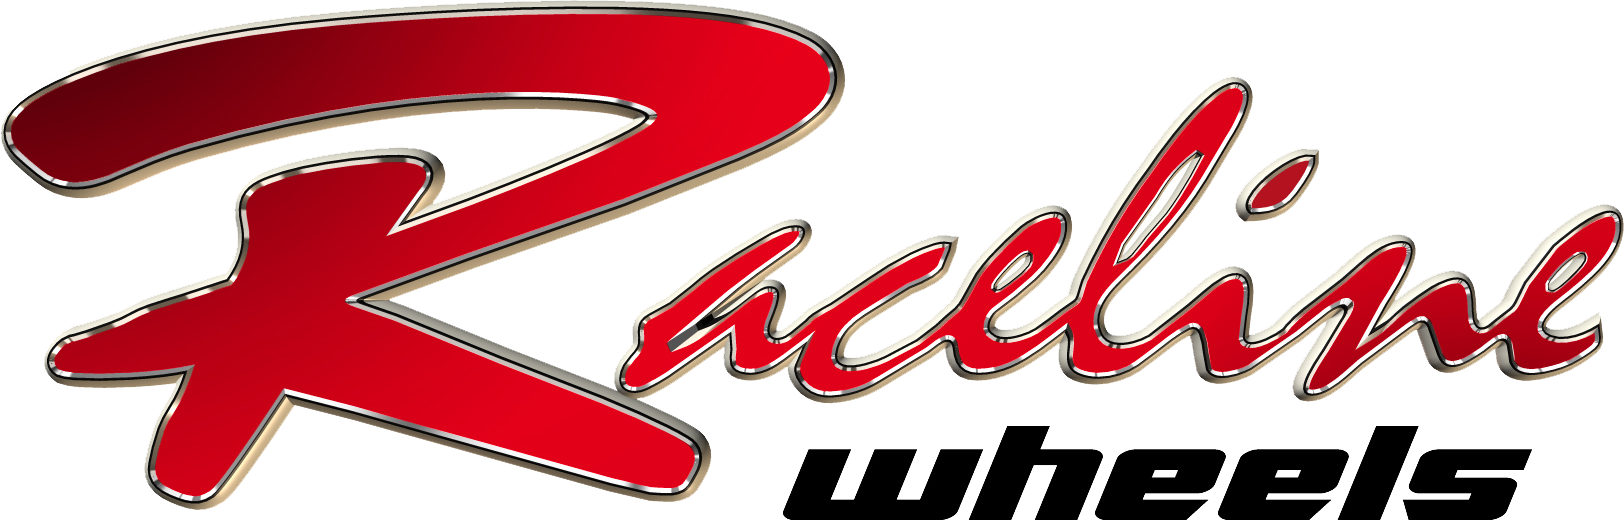 Raceline Wheels logo